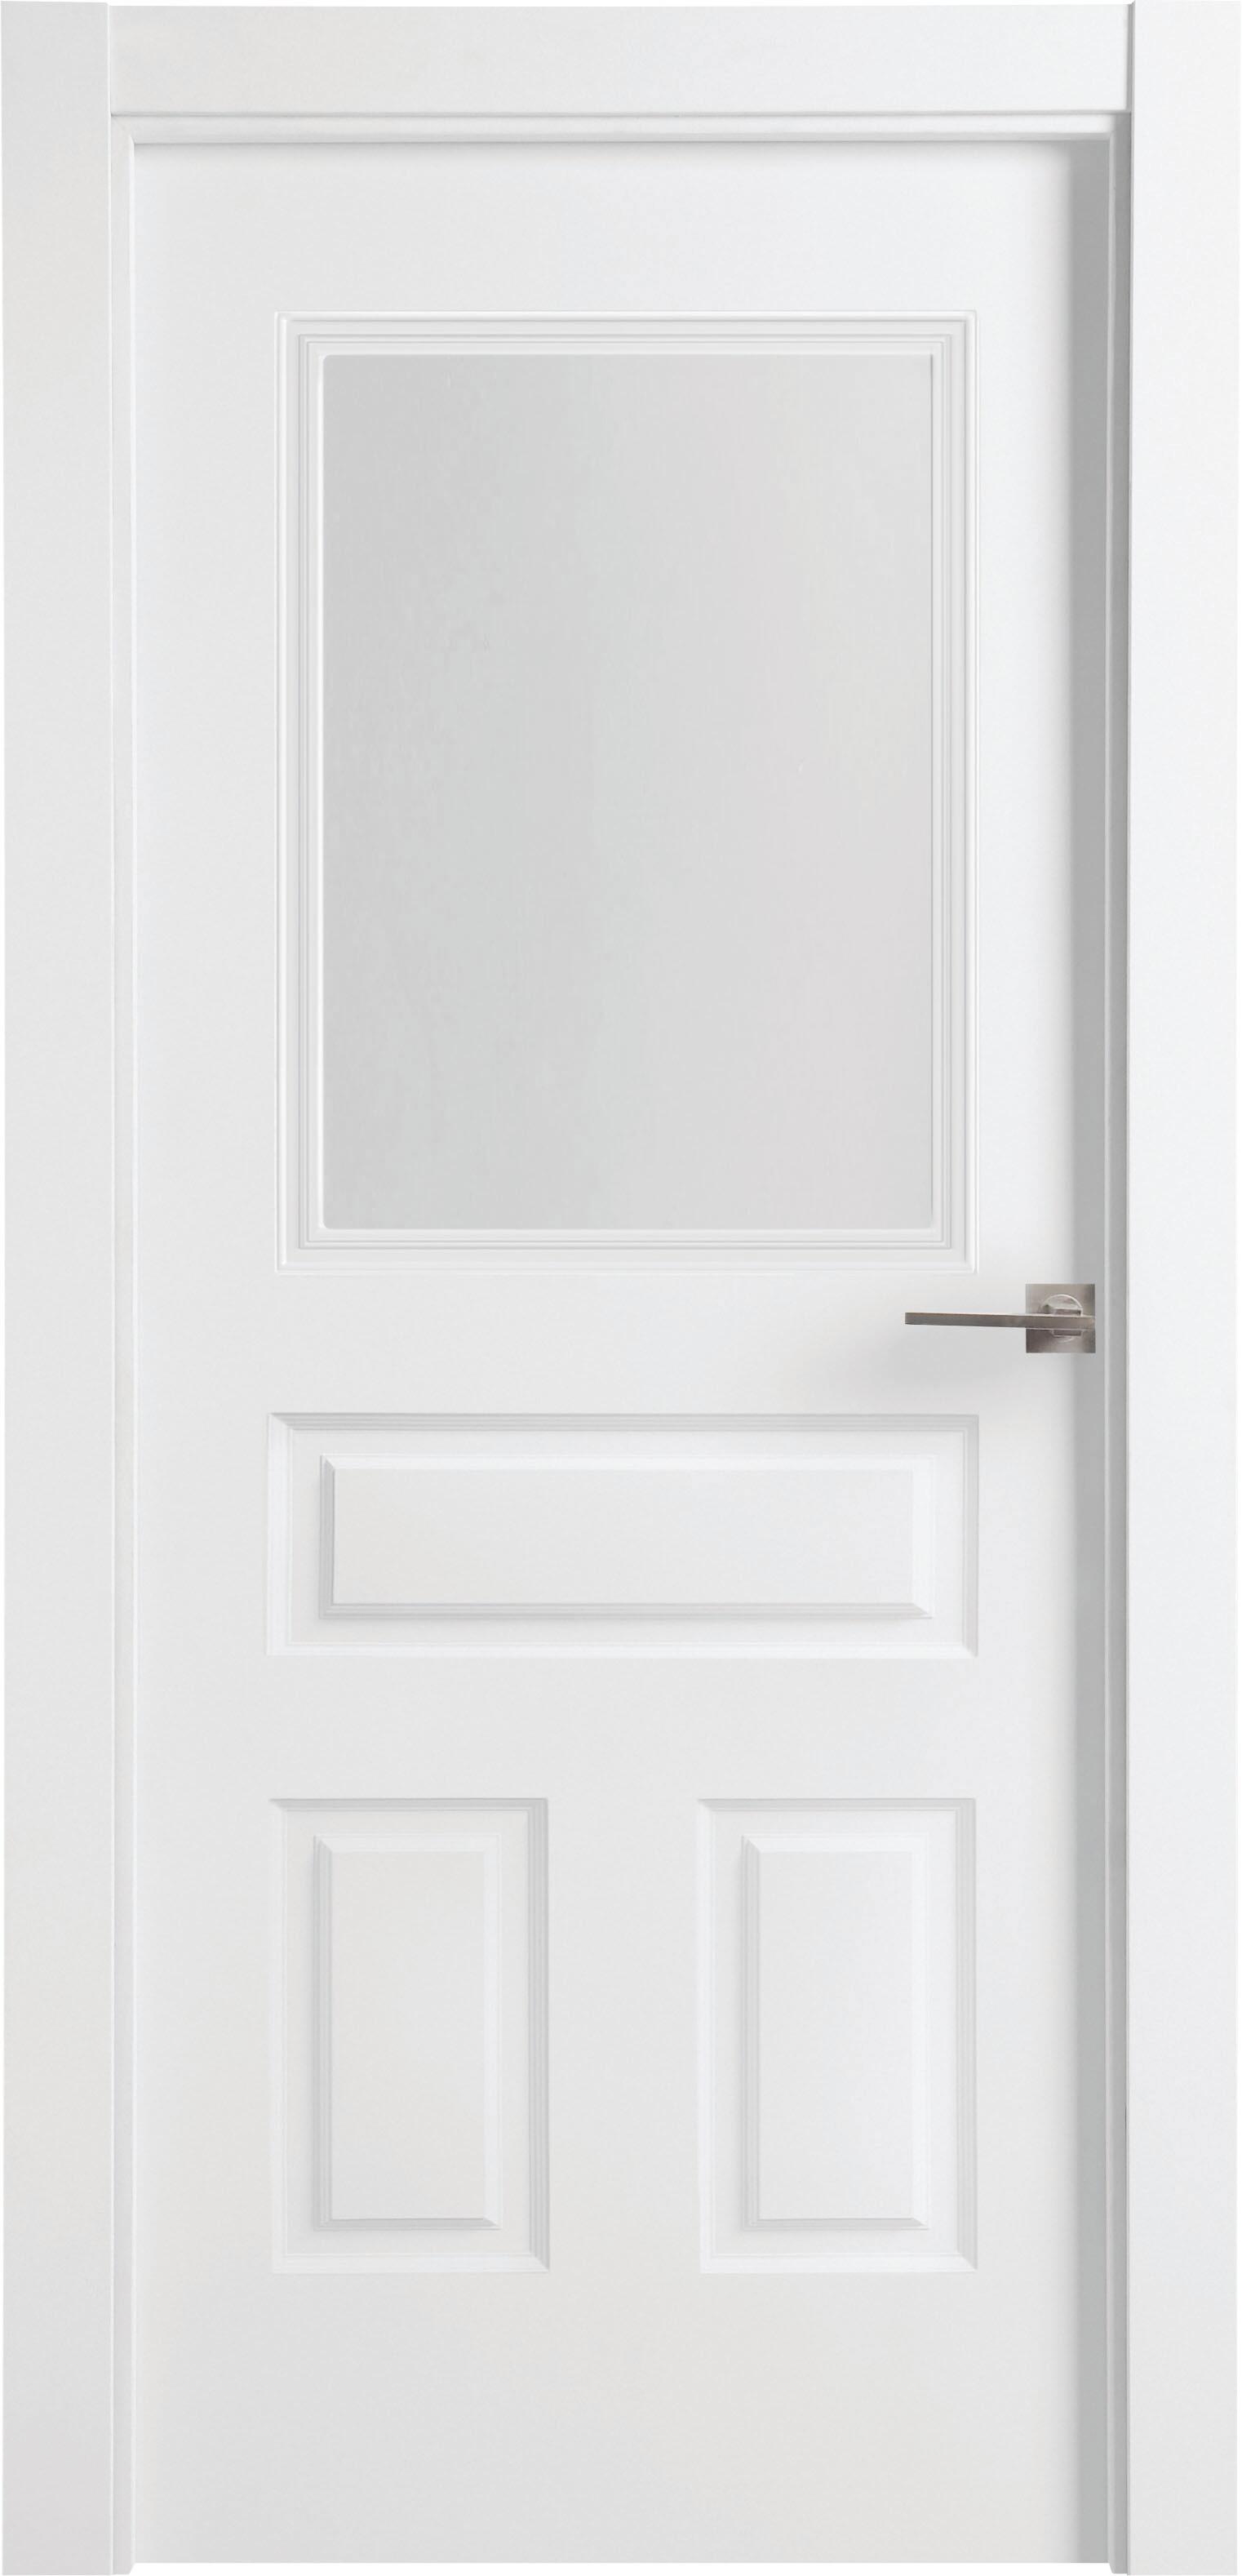 Puerta indiana plus blanco apertura izquierda con cristal 11x82,5cm